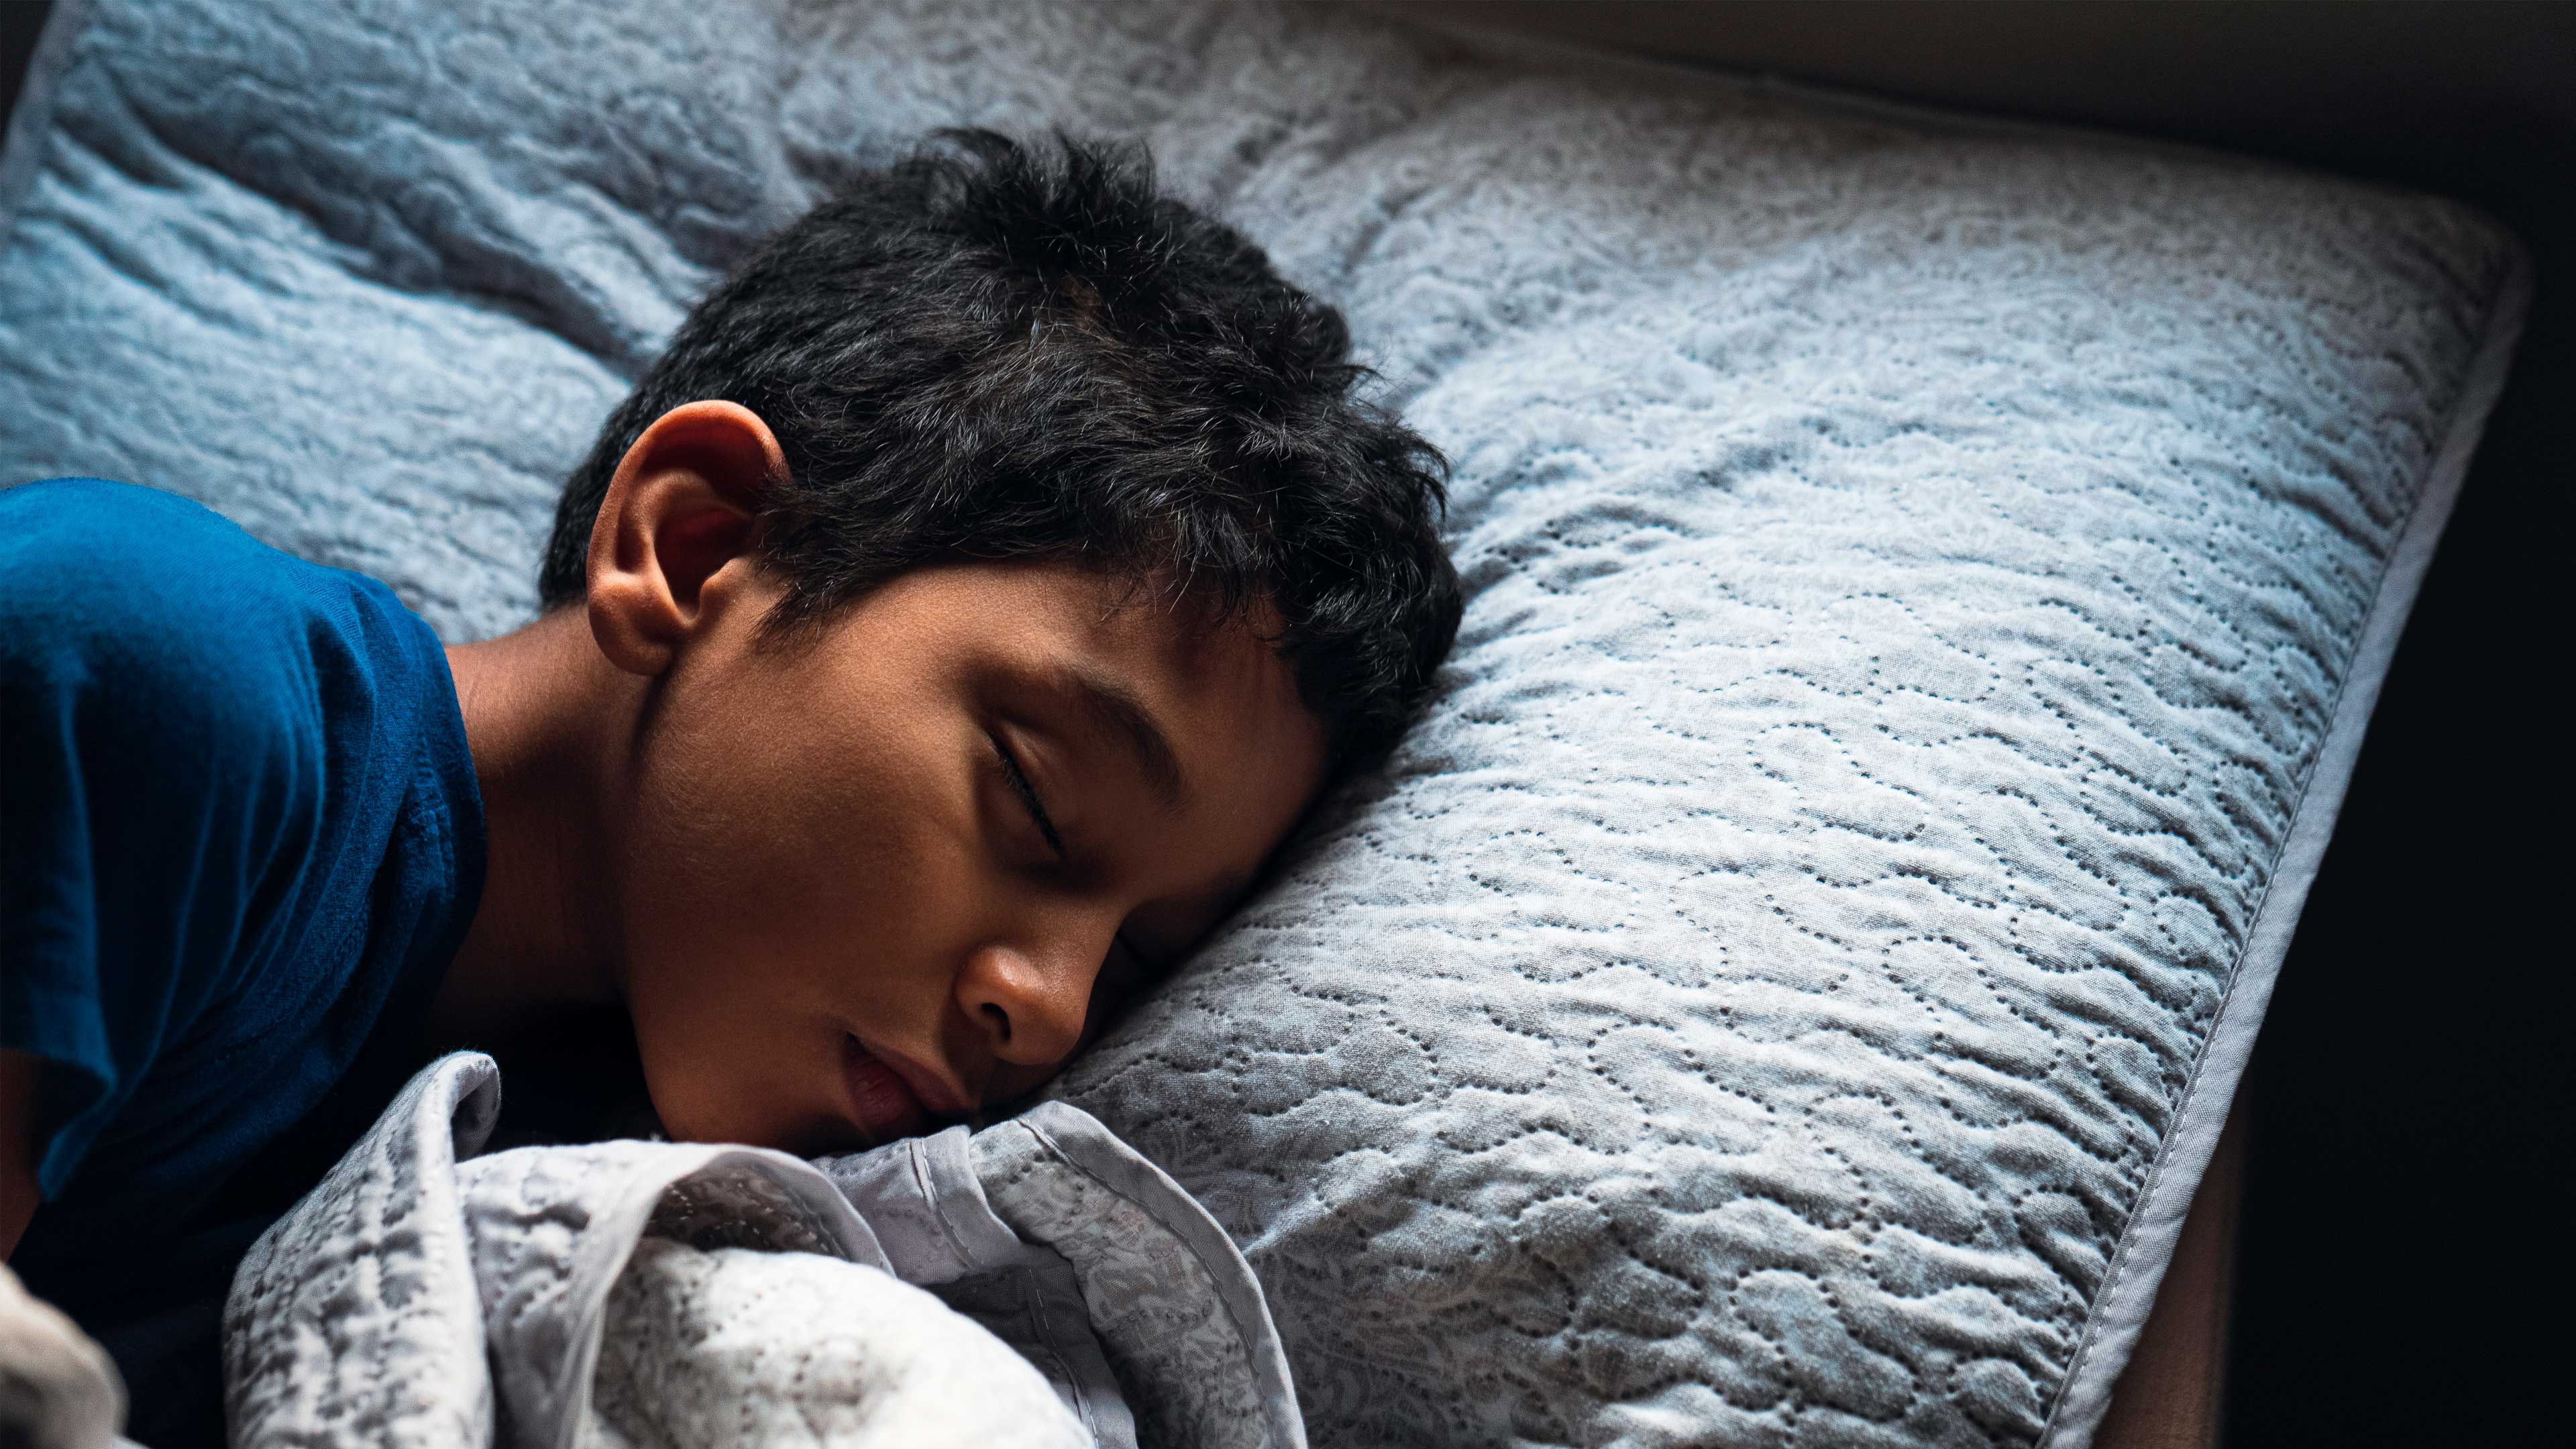 adolescentes urbanos o rurales, ¿quién duerme más?